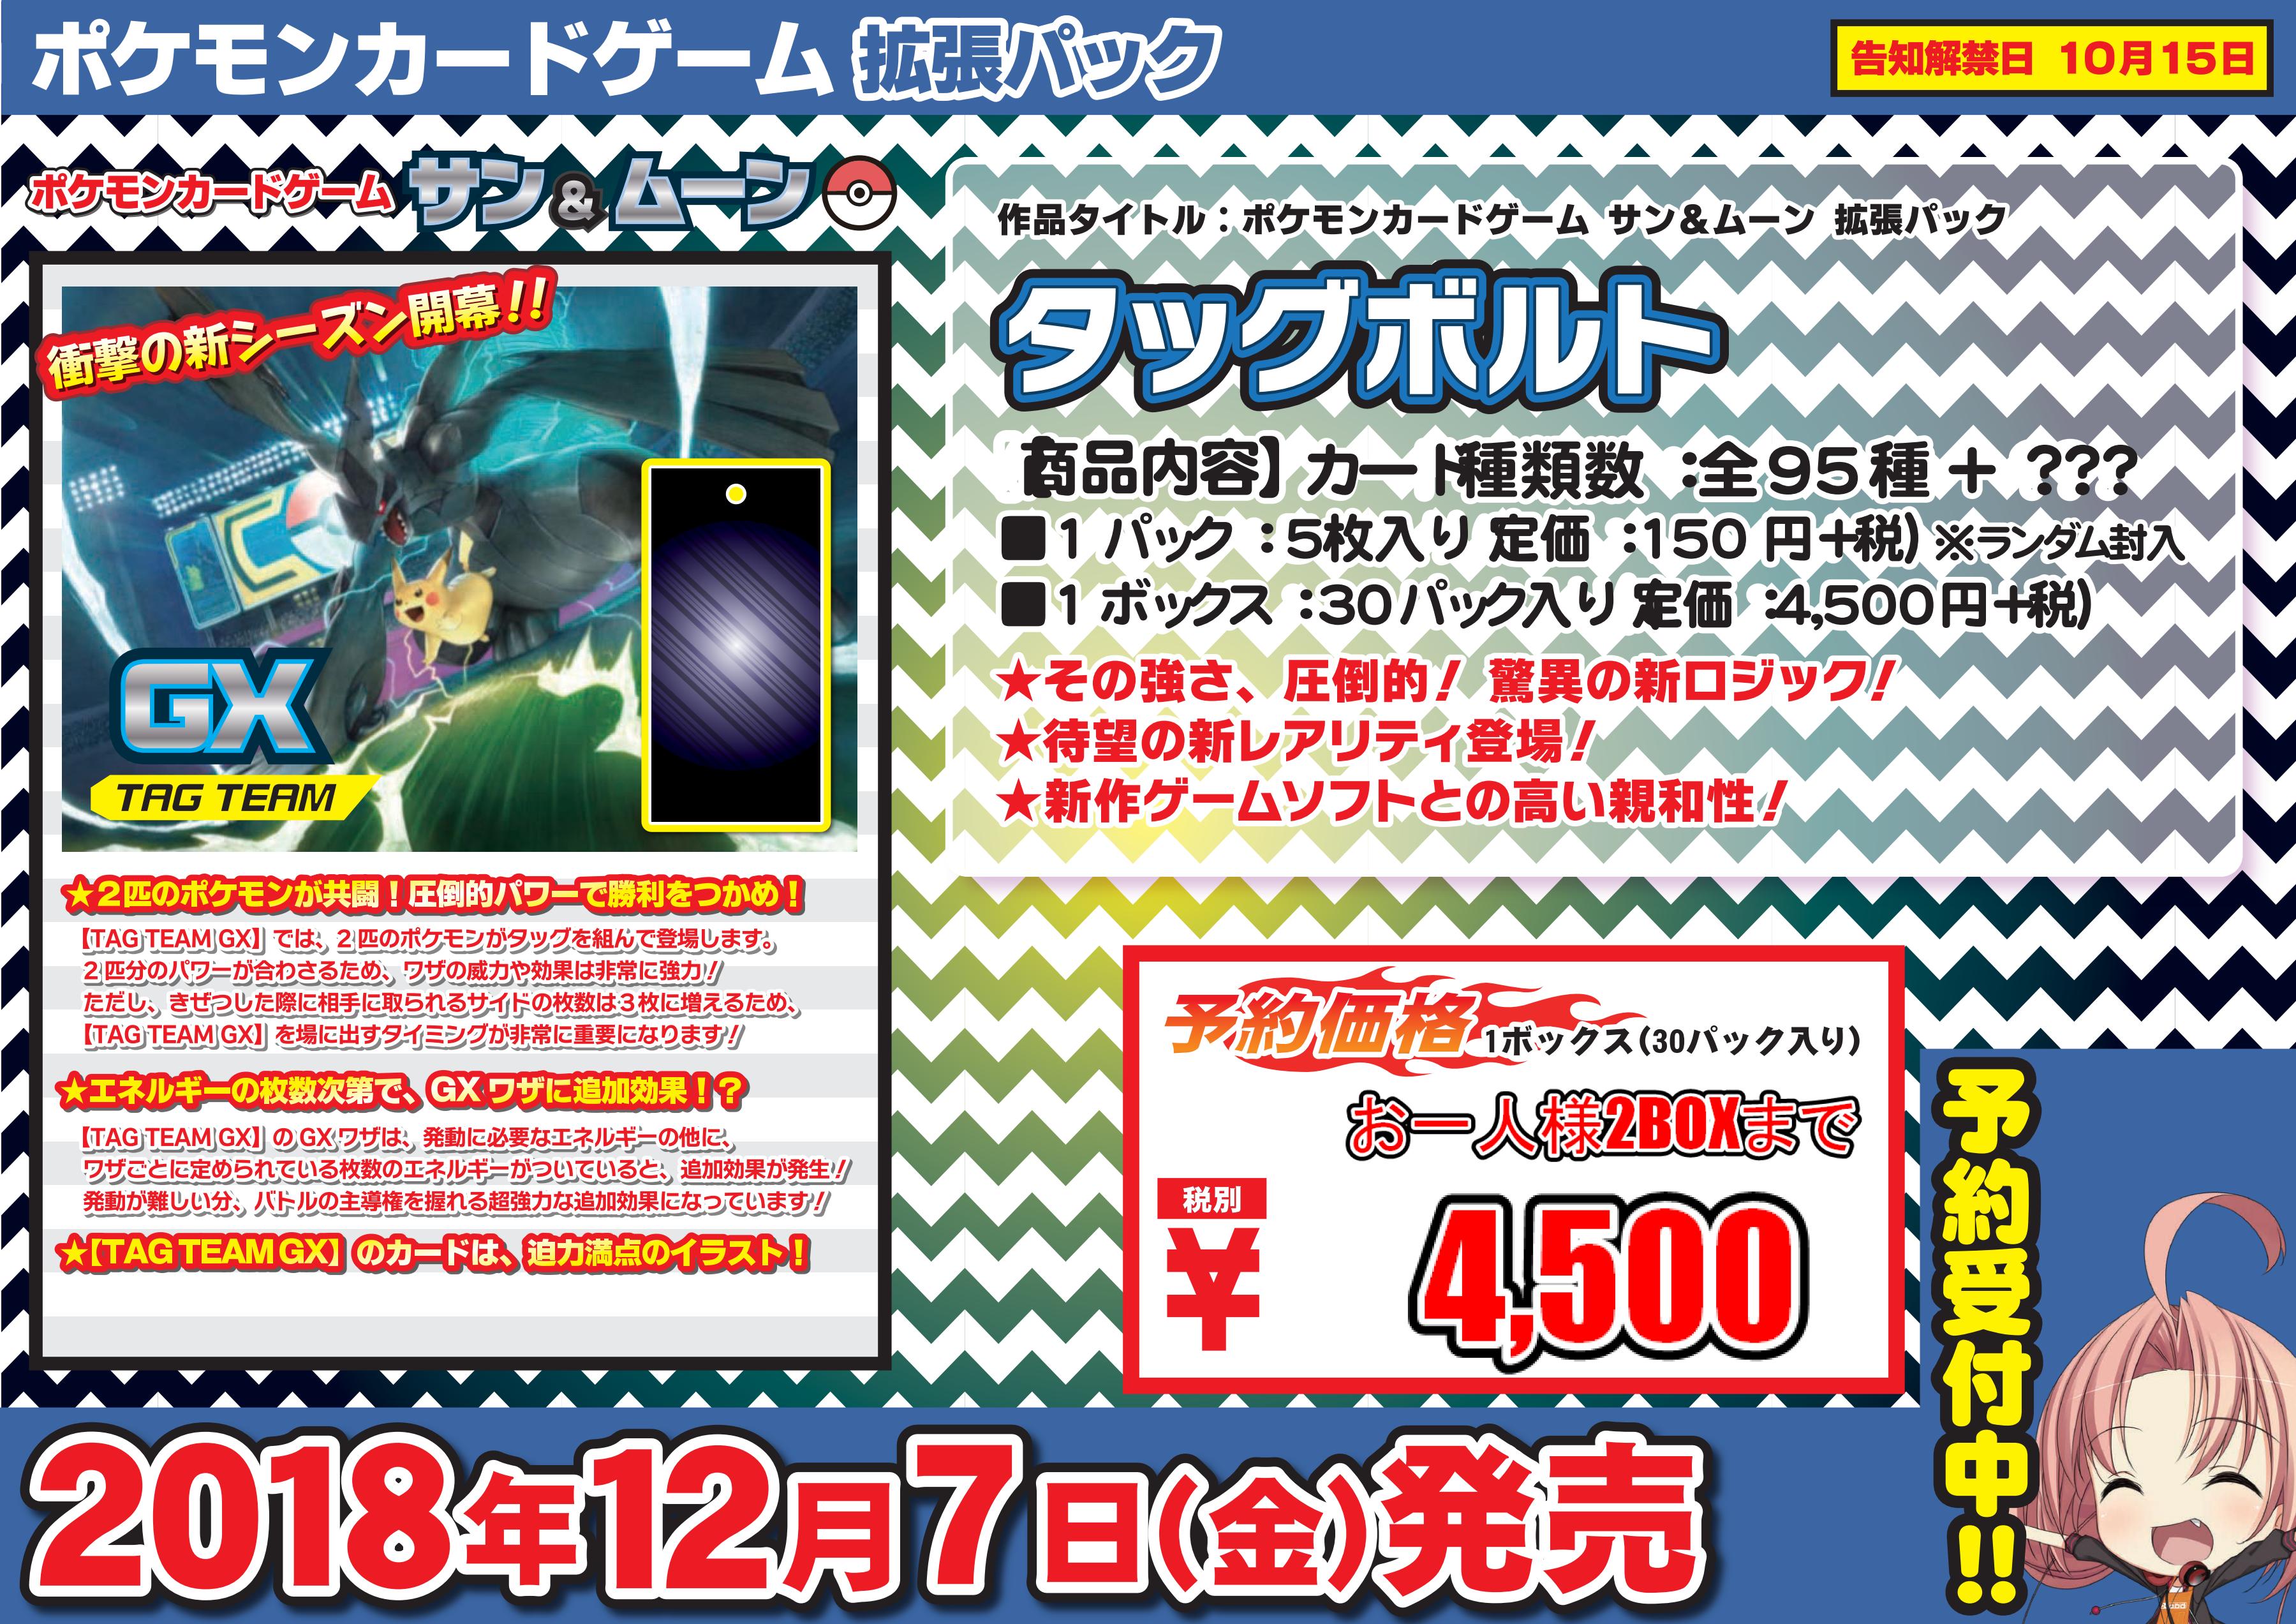 武蔵小杉店 新規予約受付情報 11 2更新 ポケモンカードゲーム の店舗ブログ カードラボ